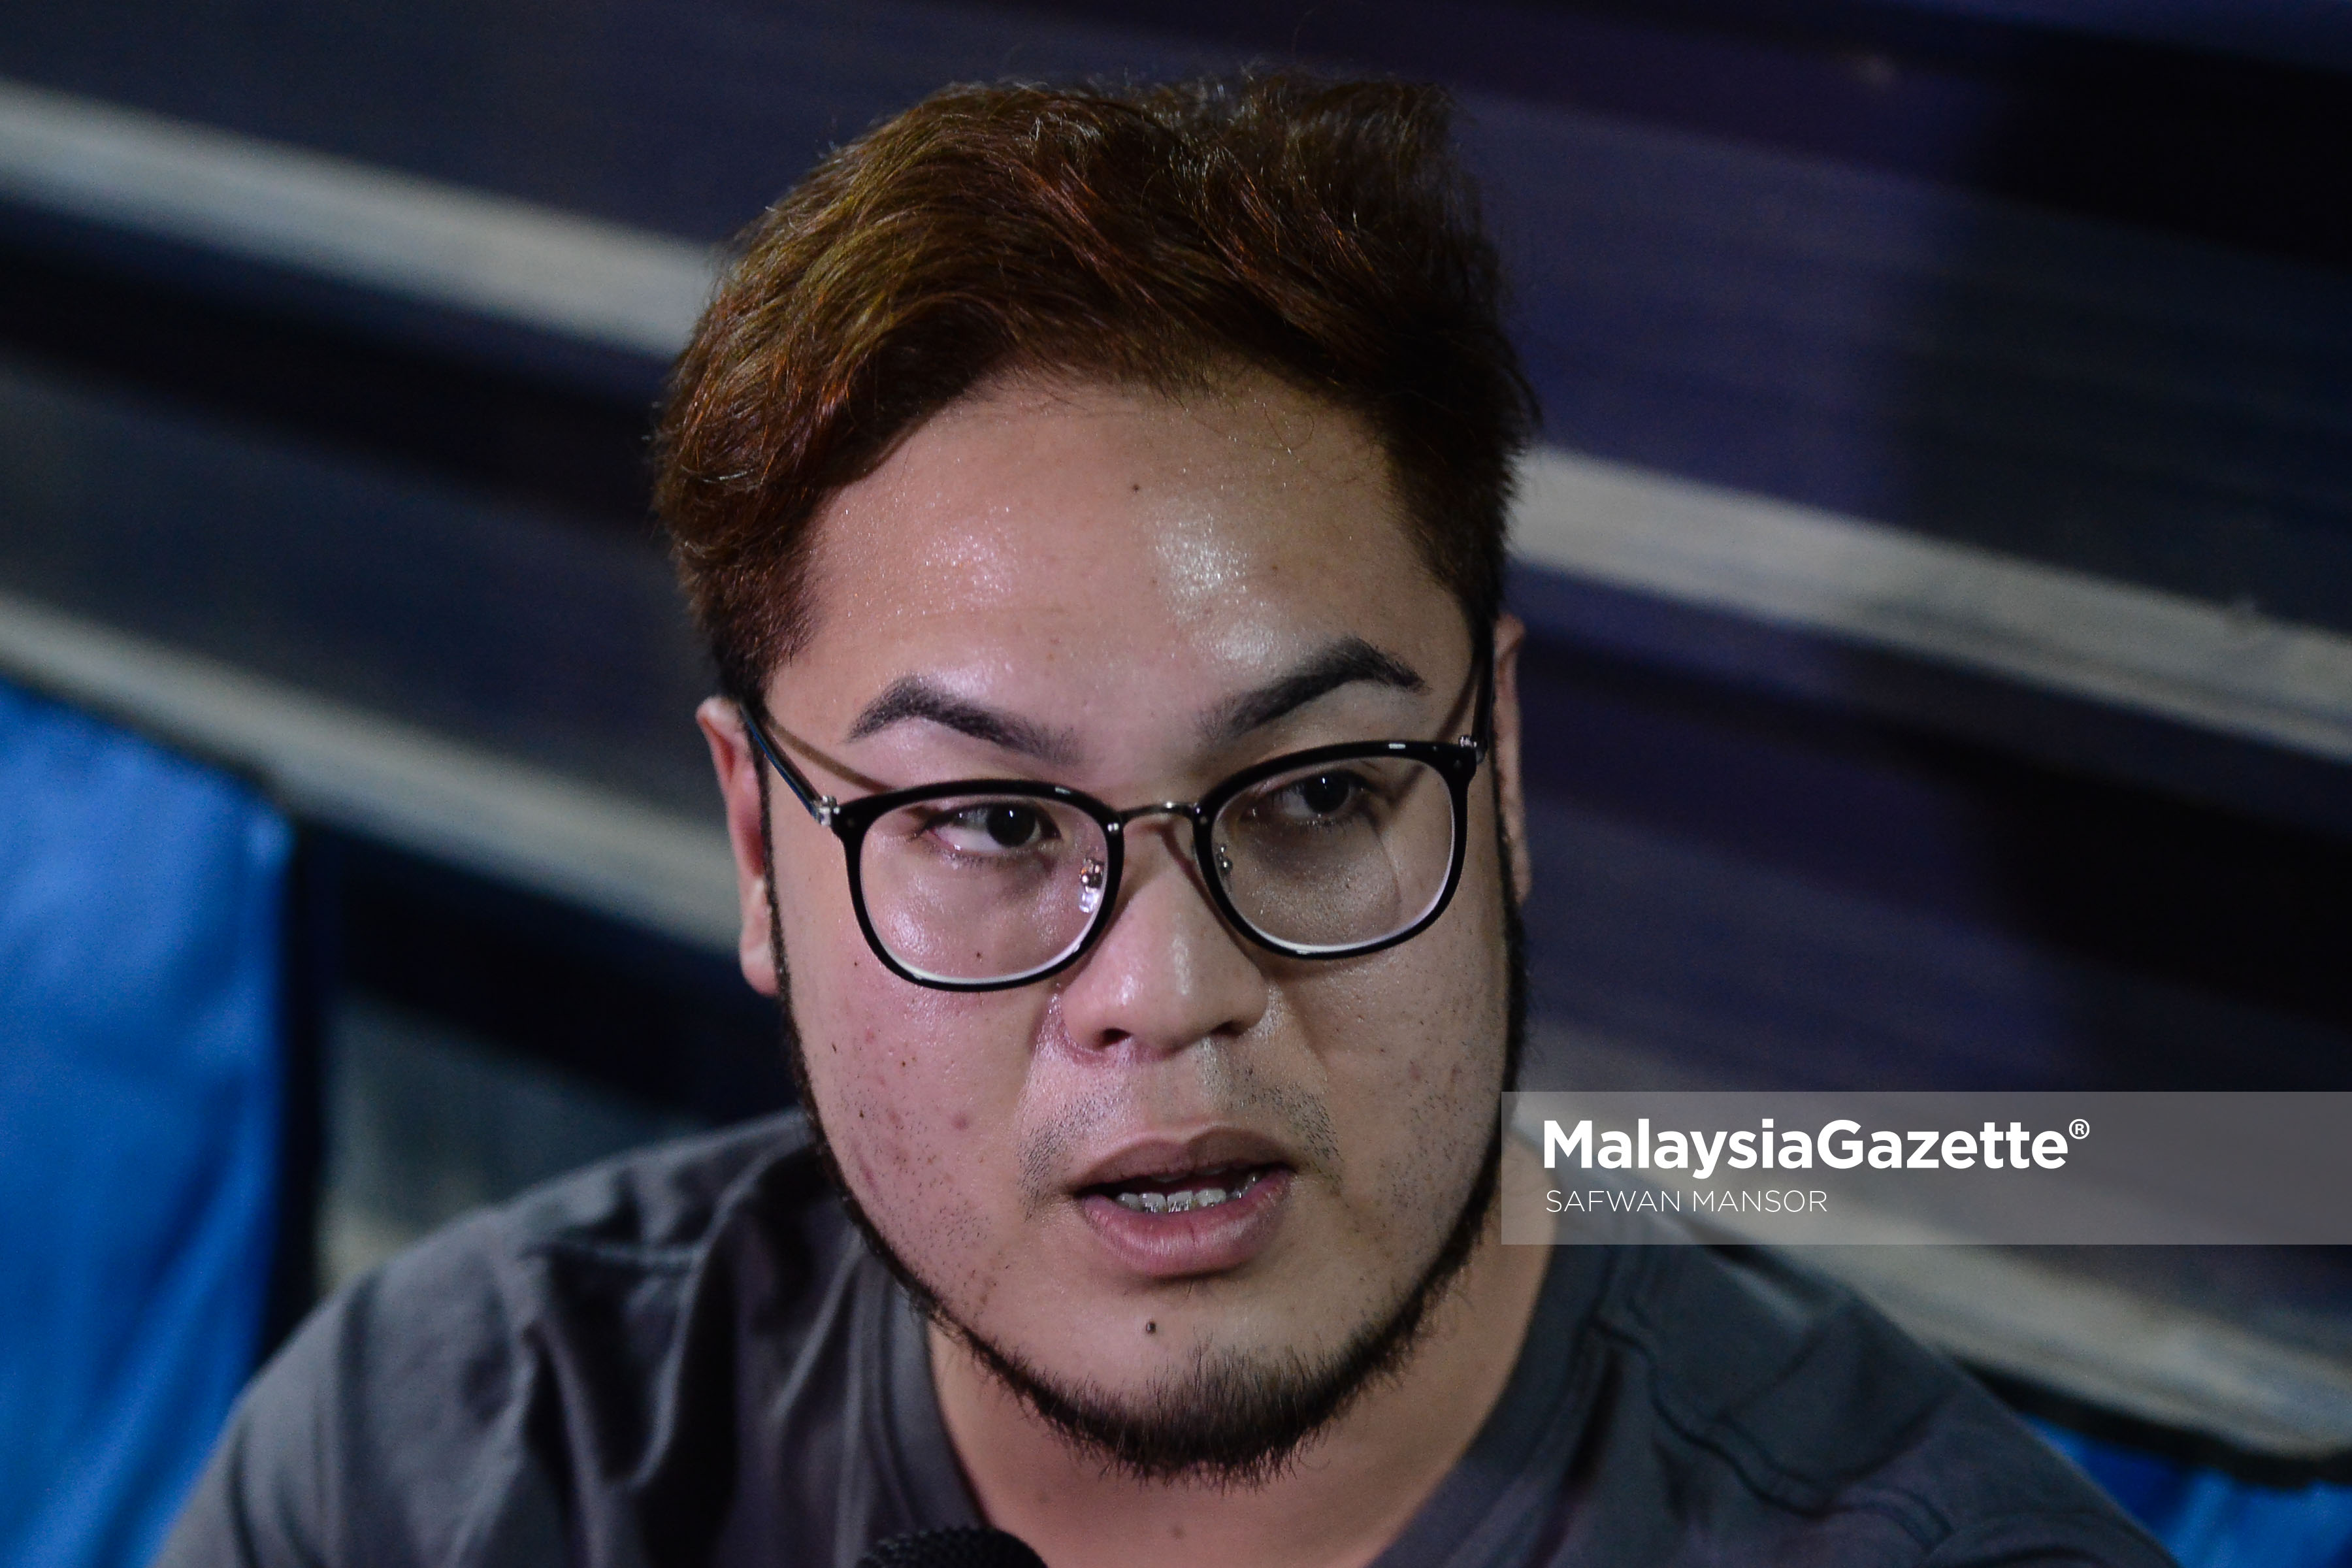 Wartawan BERNAMA, Mohd Audi Ghazali yang bertugas pawaktu malam membuat liputan Kes Pembunuhan Kim Jong-Nam di Istitut Perubatan Forensik Negara, Hospital Kuala Lumpur. foto SAFWAN MANSOR, 25 FEBRUARI 2017